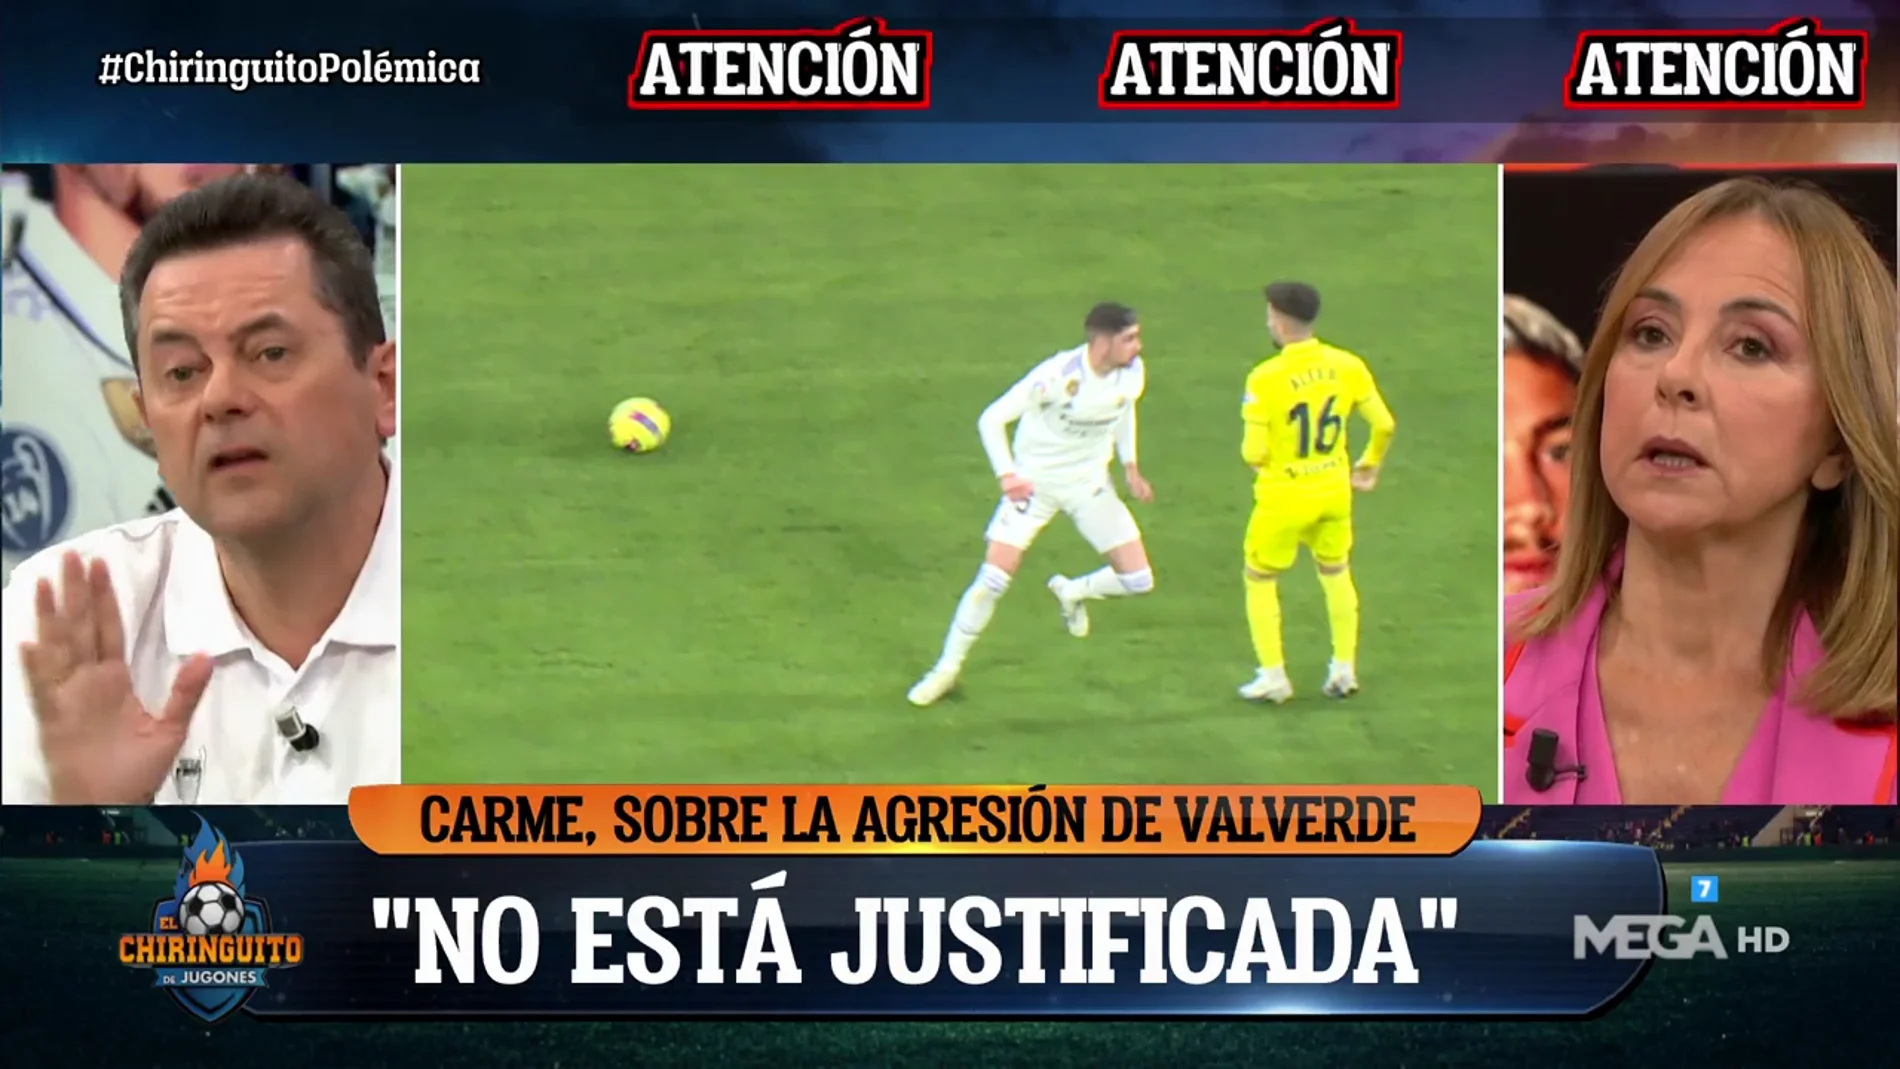 Valverde guarda silencio sobre su agresión